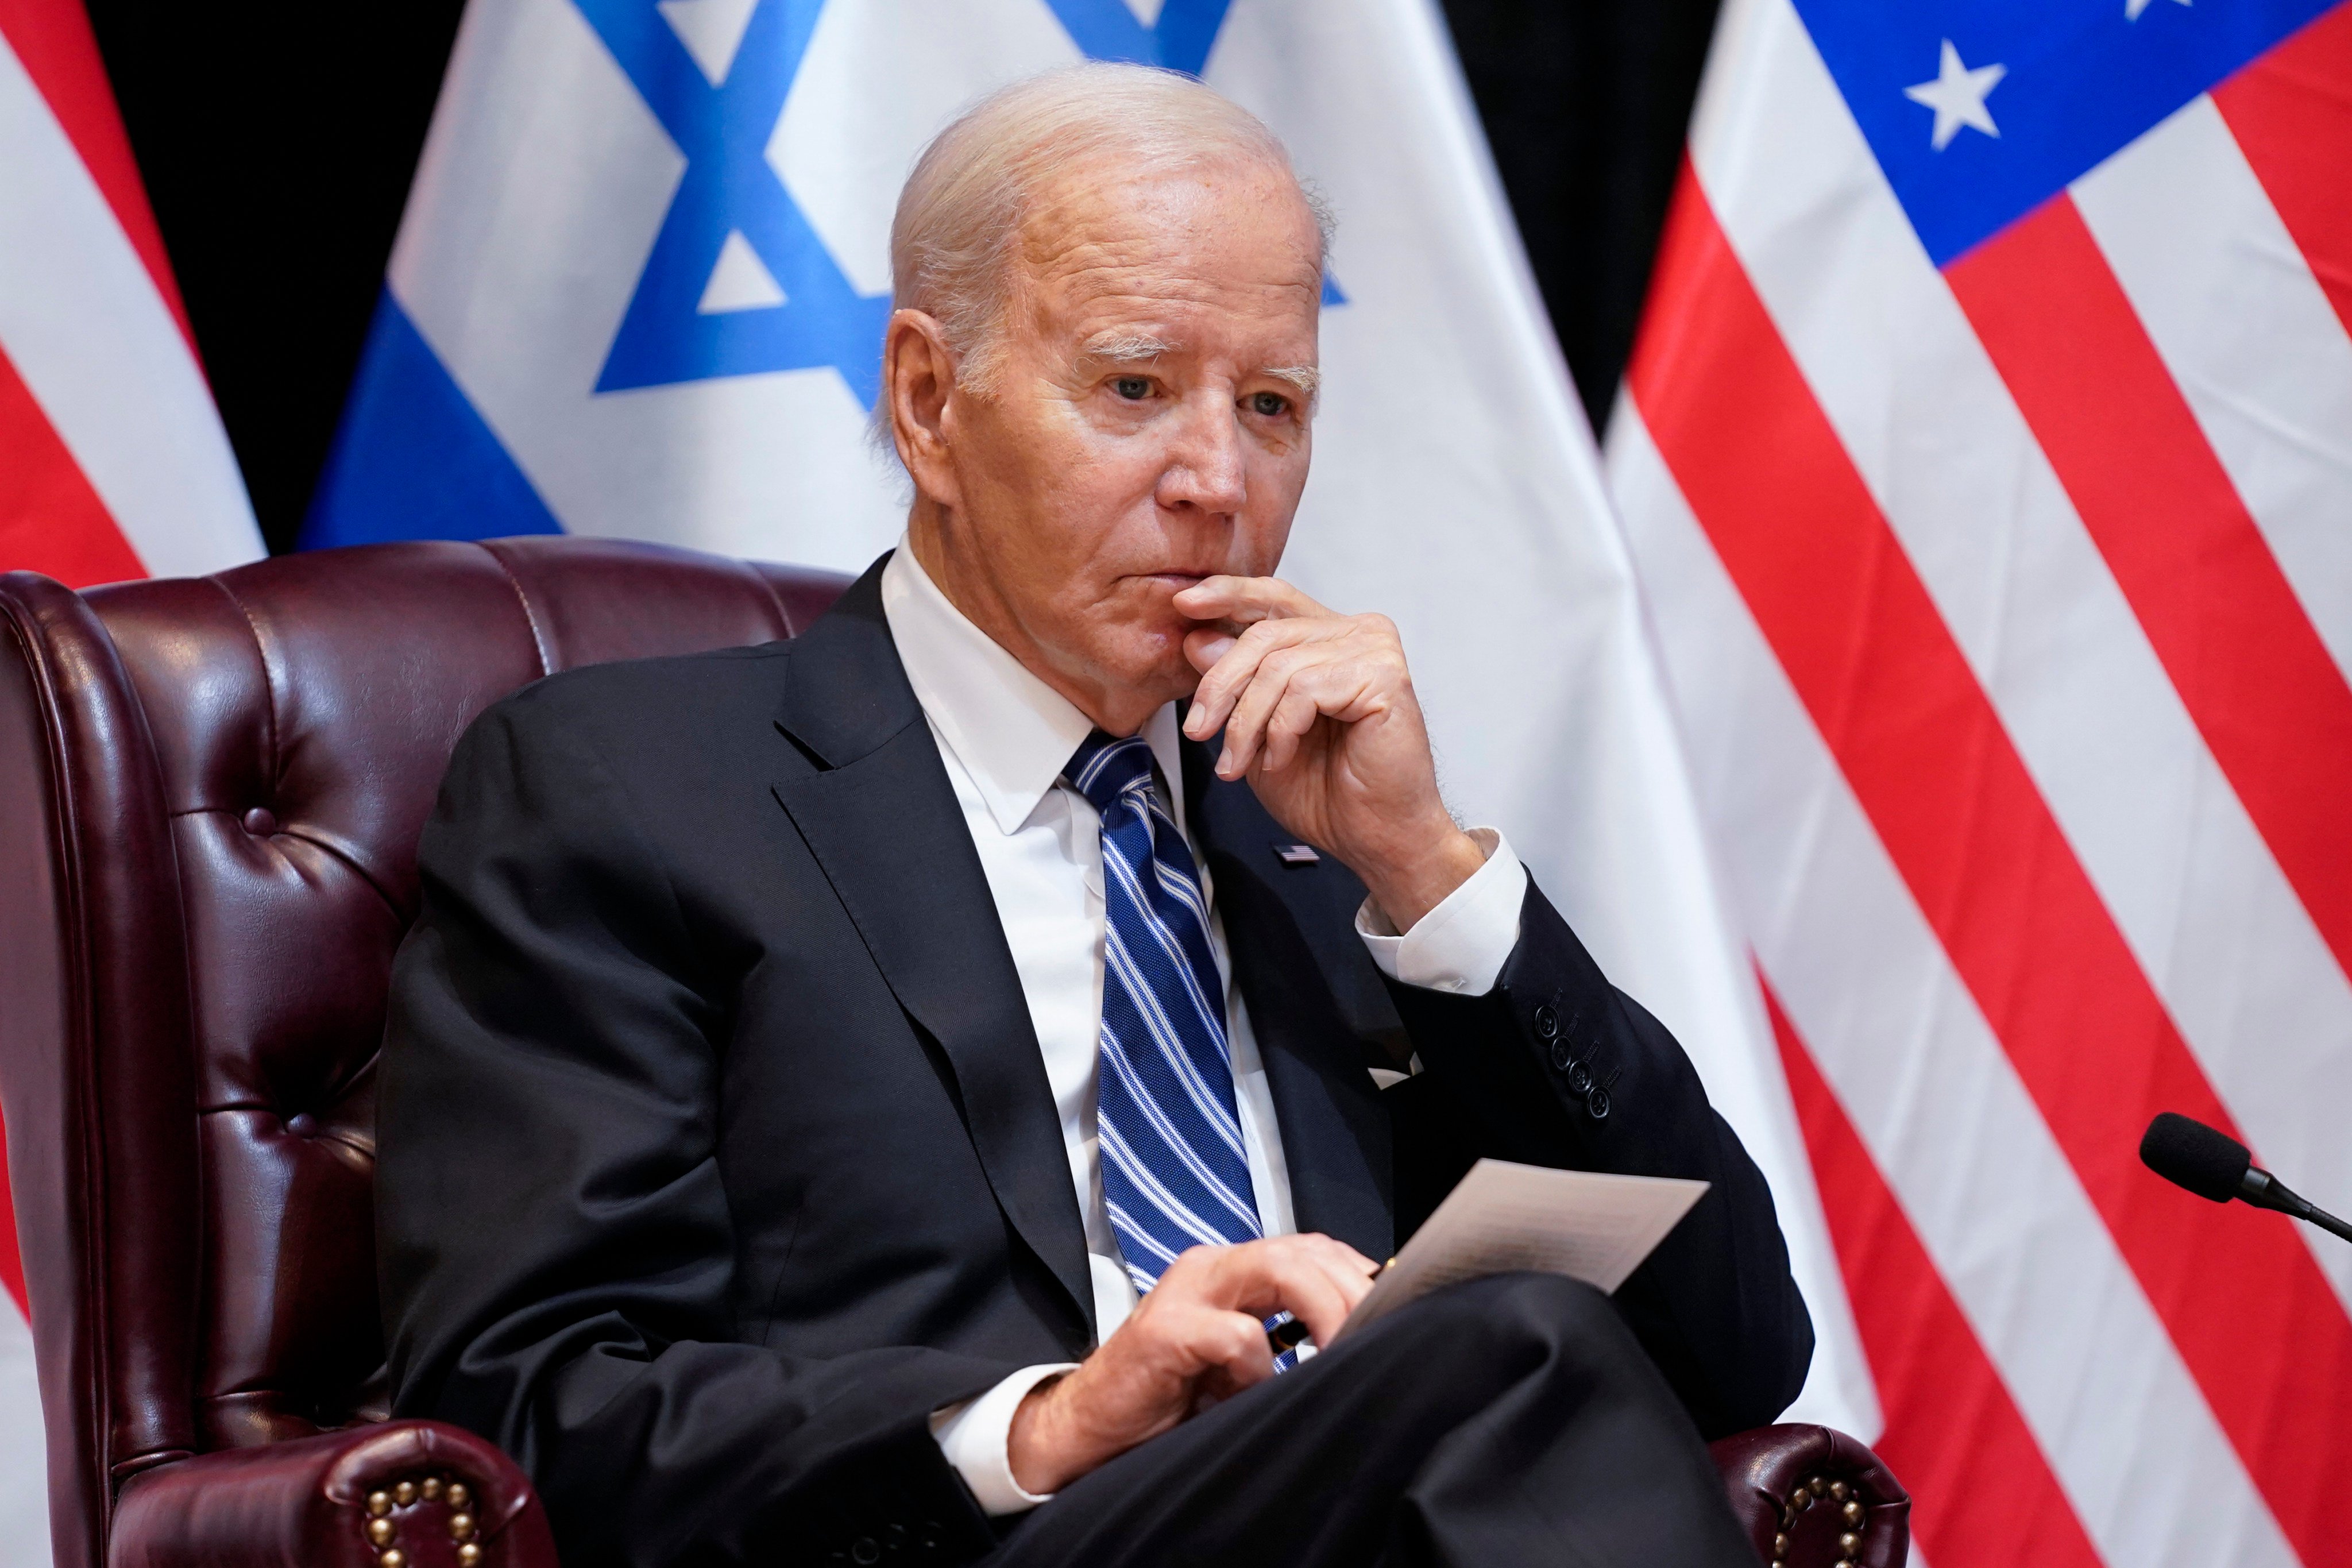 US President Joe Biden during a meeting with Israeli Prime Minister Benjamin Netanyahu in Tel Aviv last week. Photo: AP